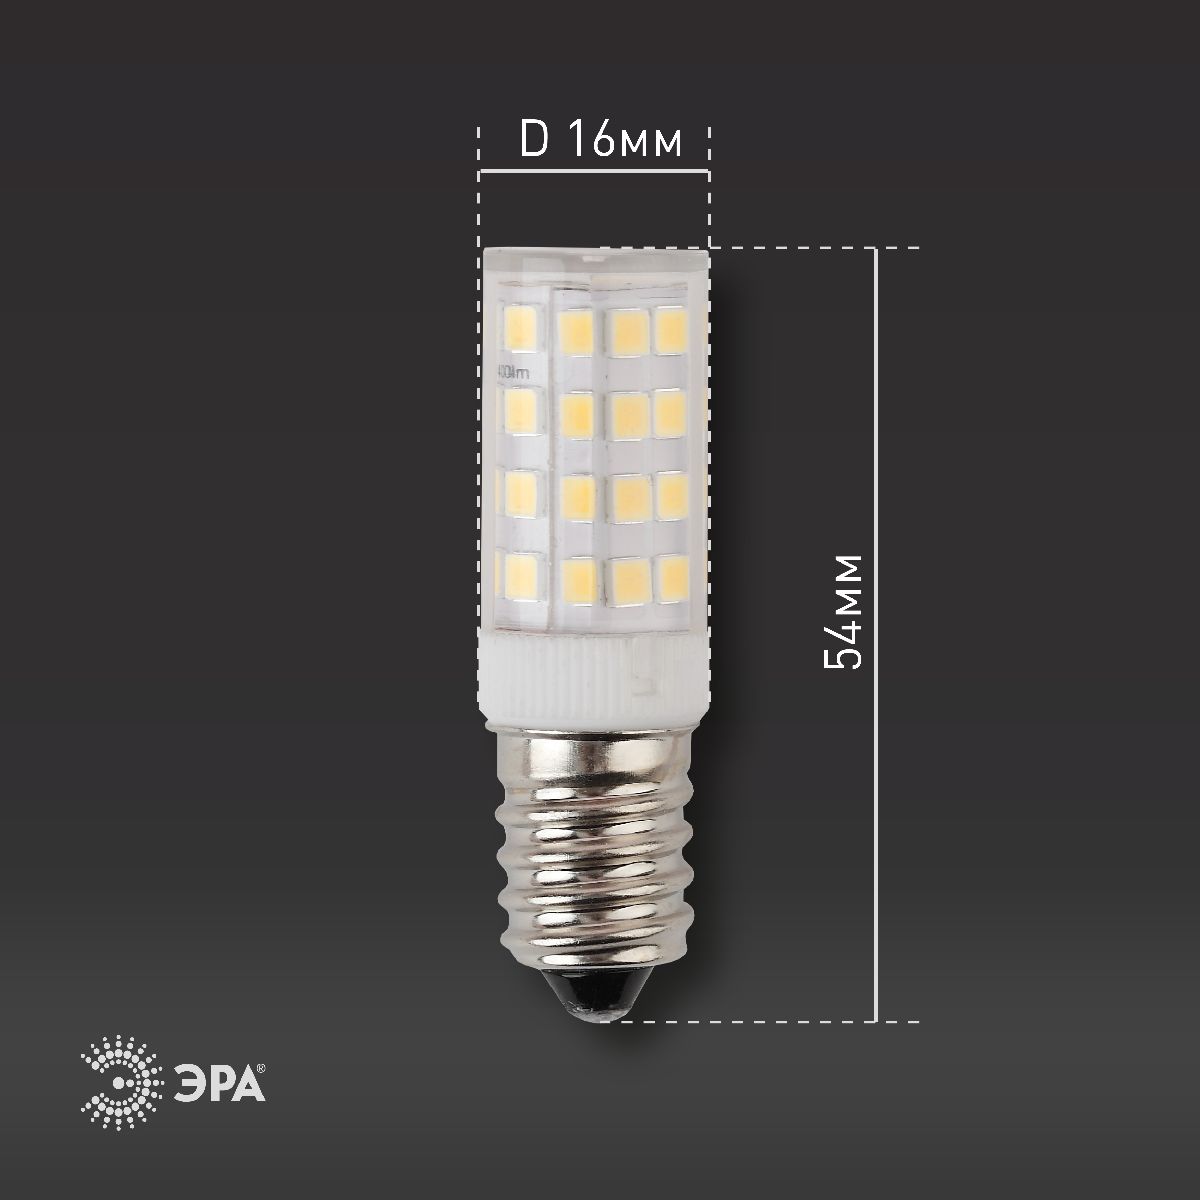 Лампа светодиодная Эра E14 5W 4000K LED T25-5W-CORN-840-E14 Б0033031